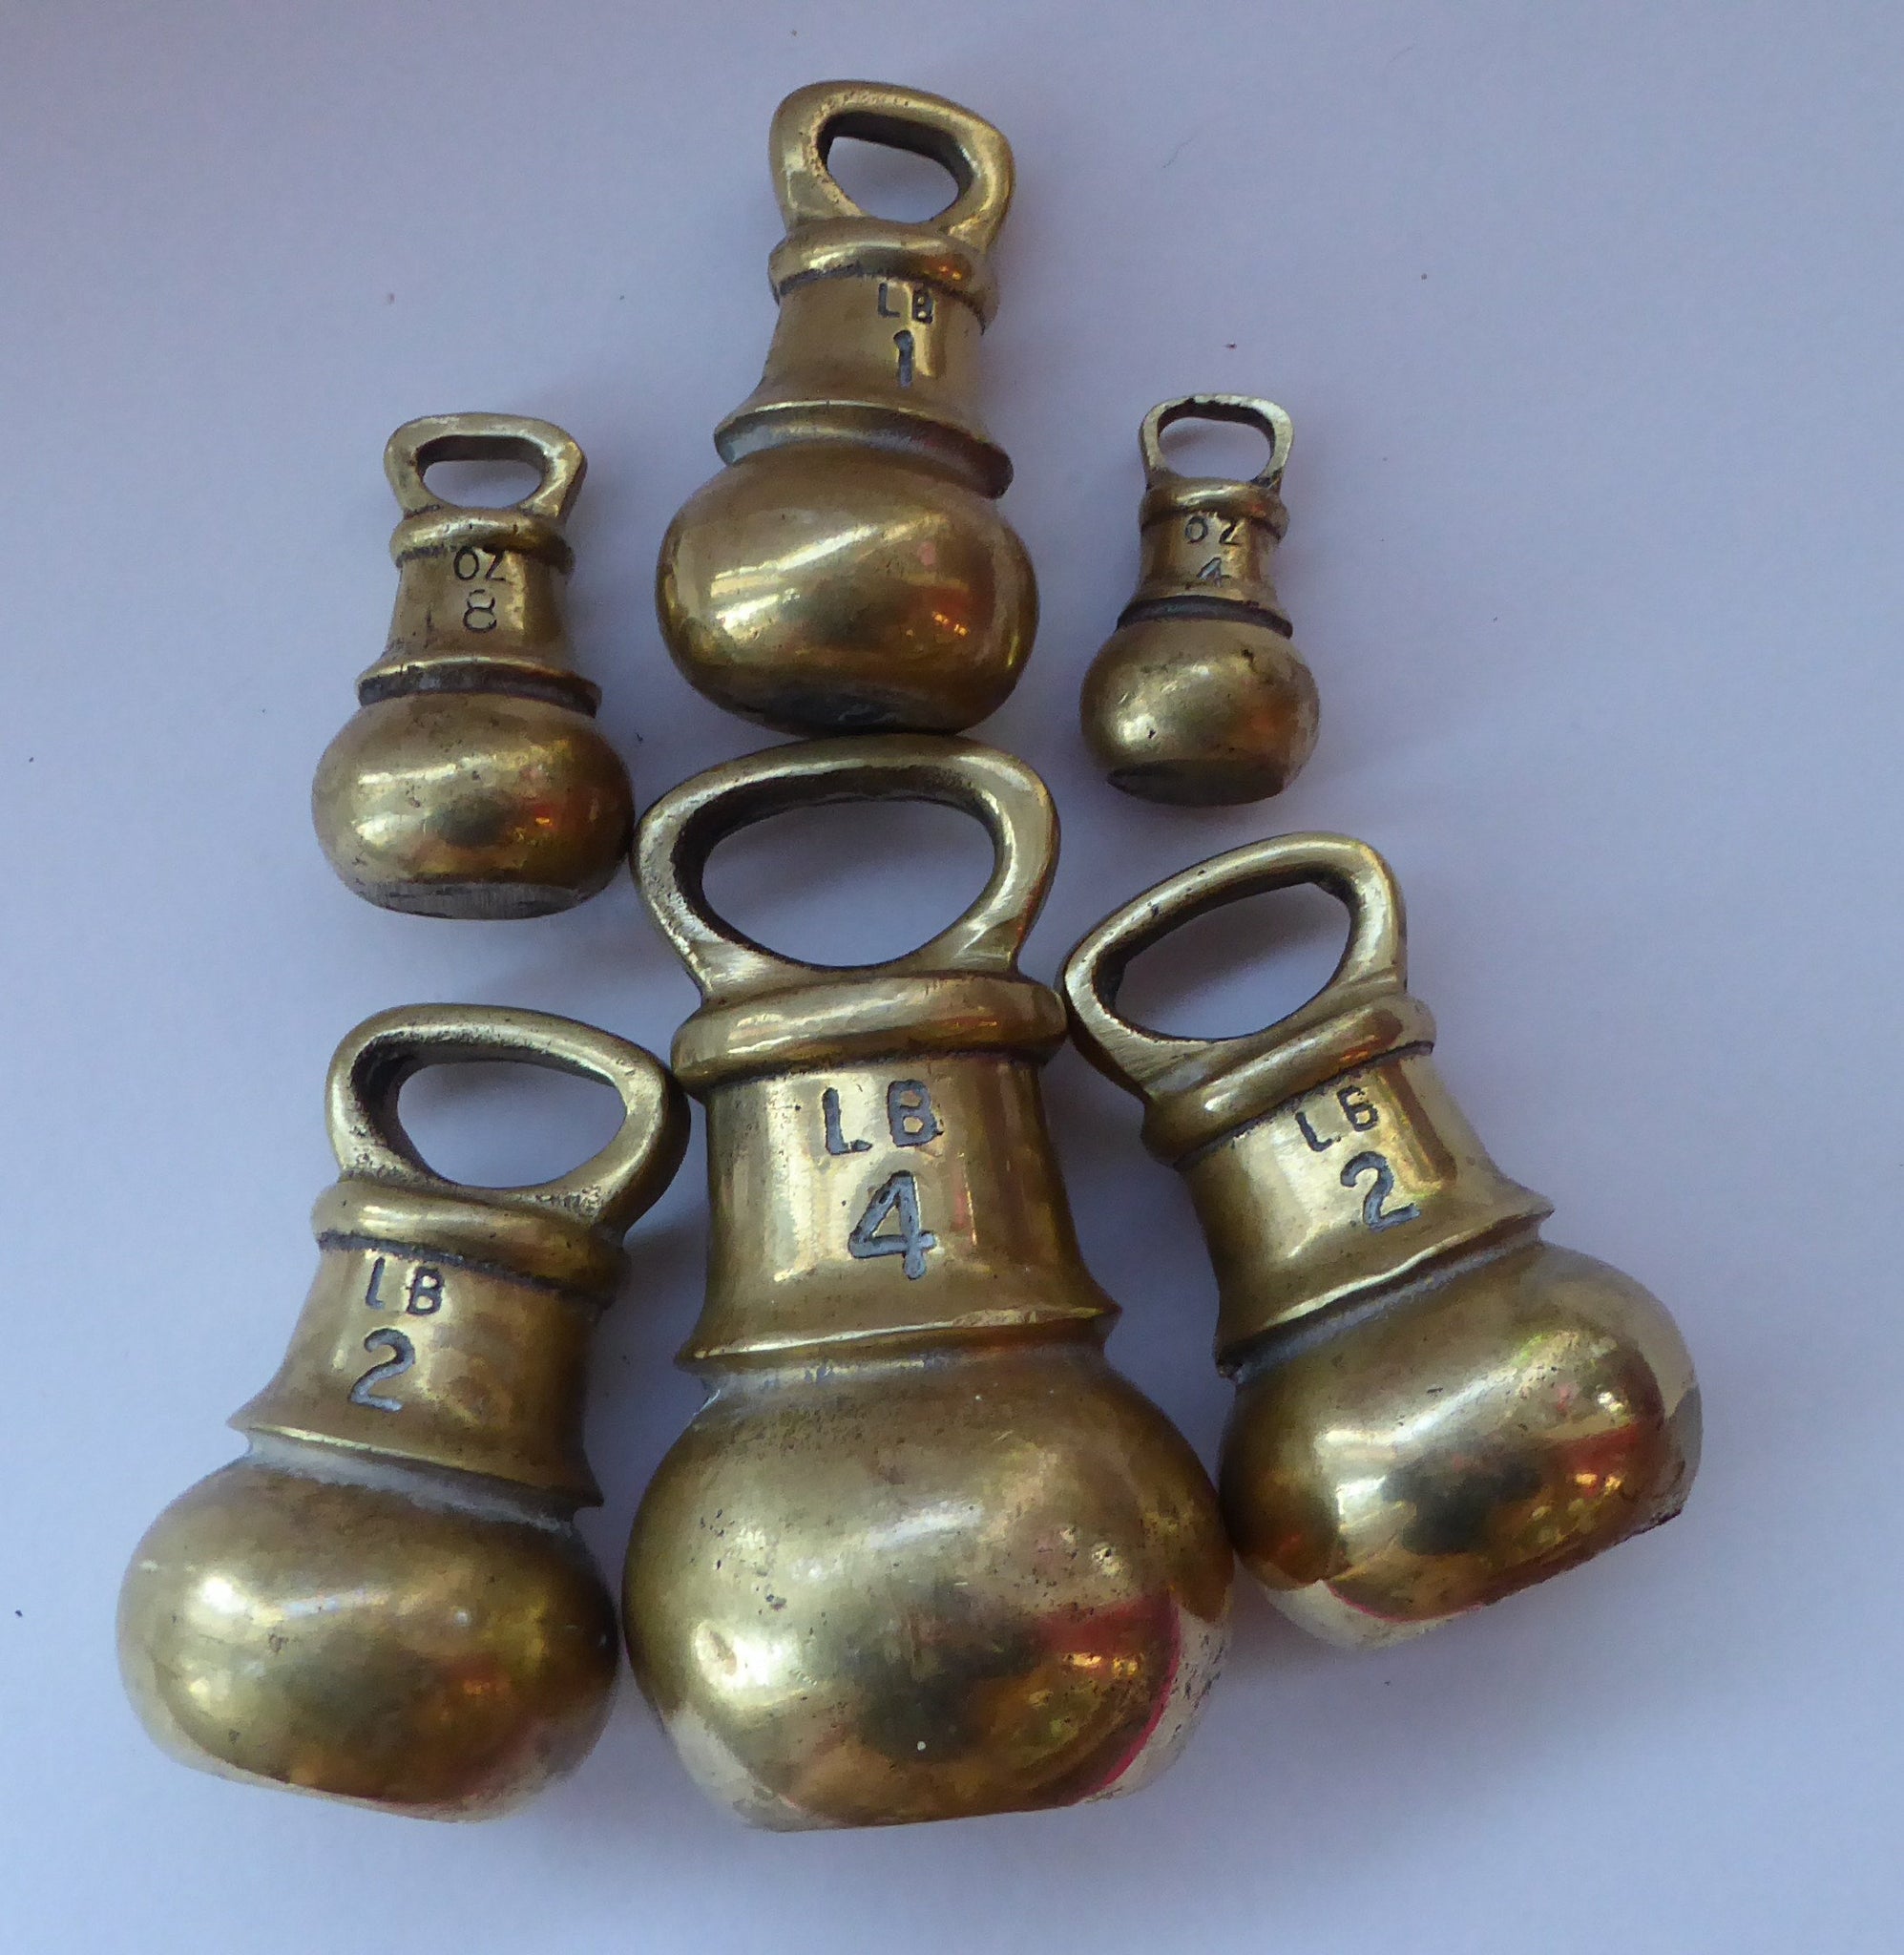 Antique Victorian Brass British Postal Scales & Weights, Complete Set